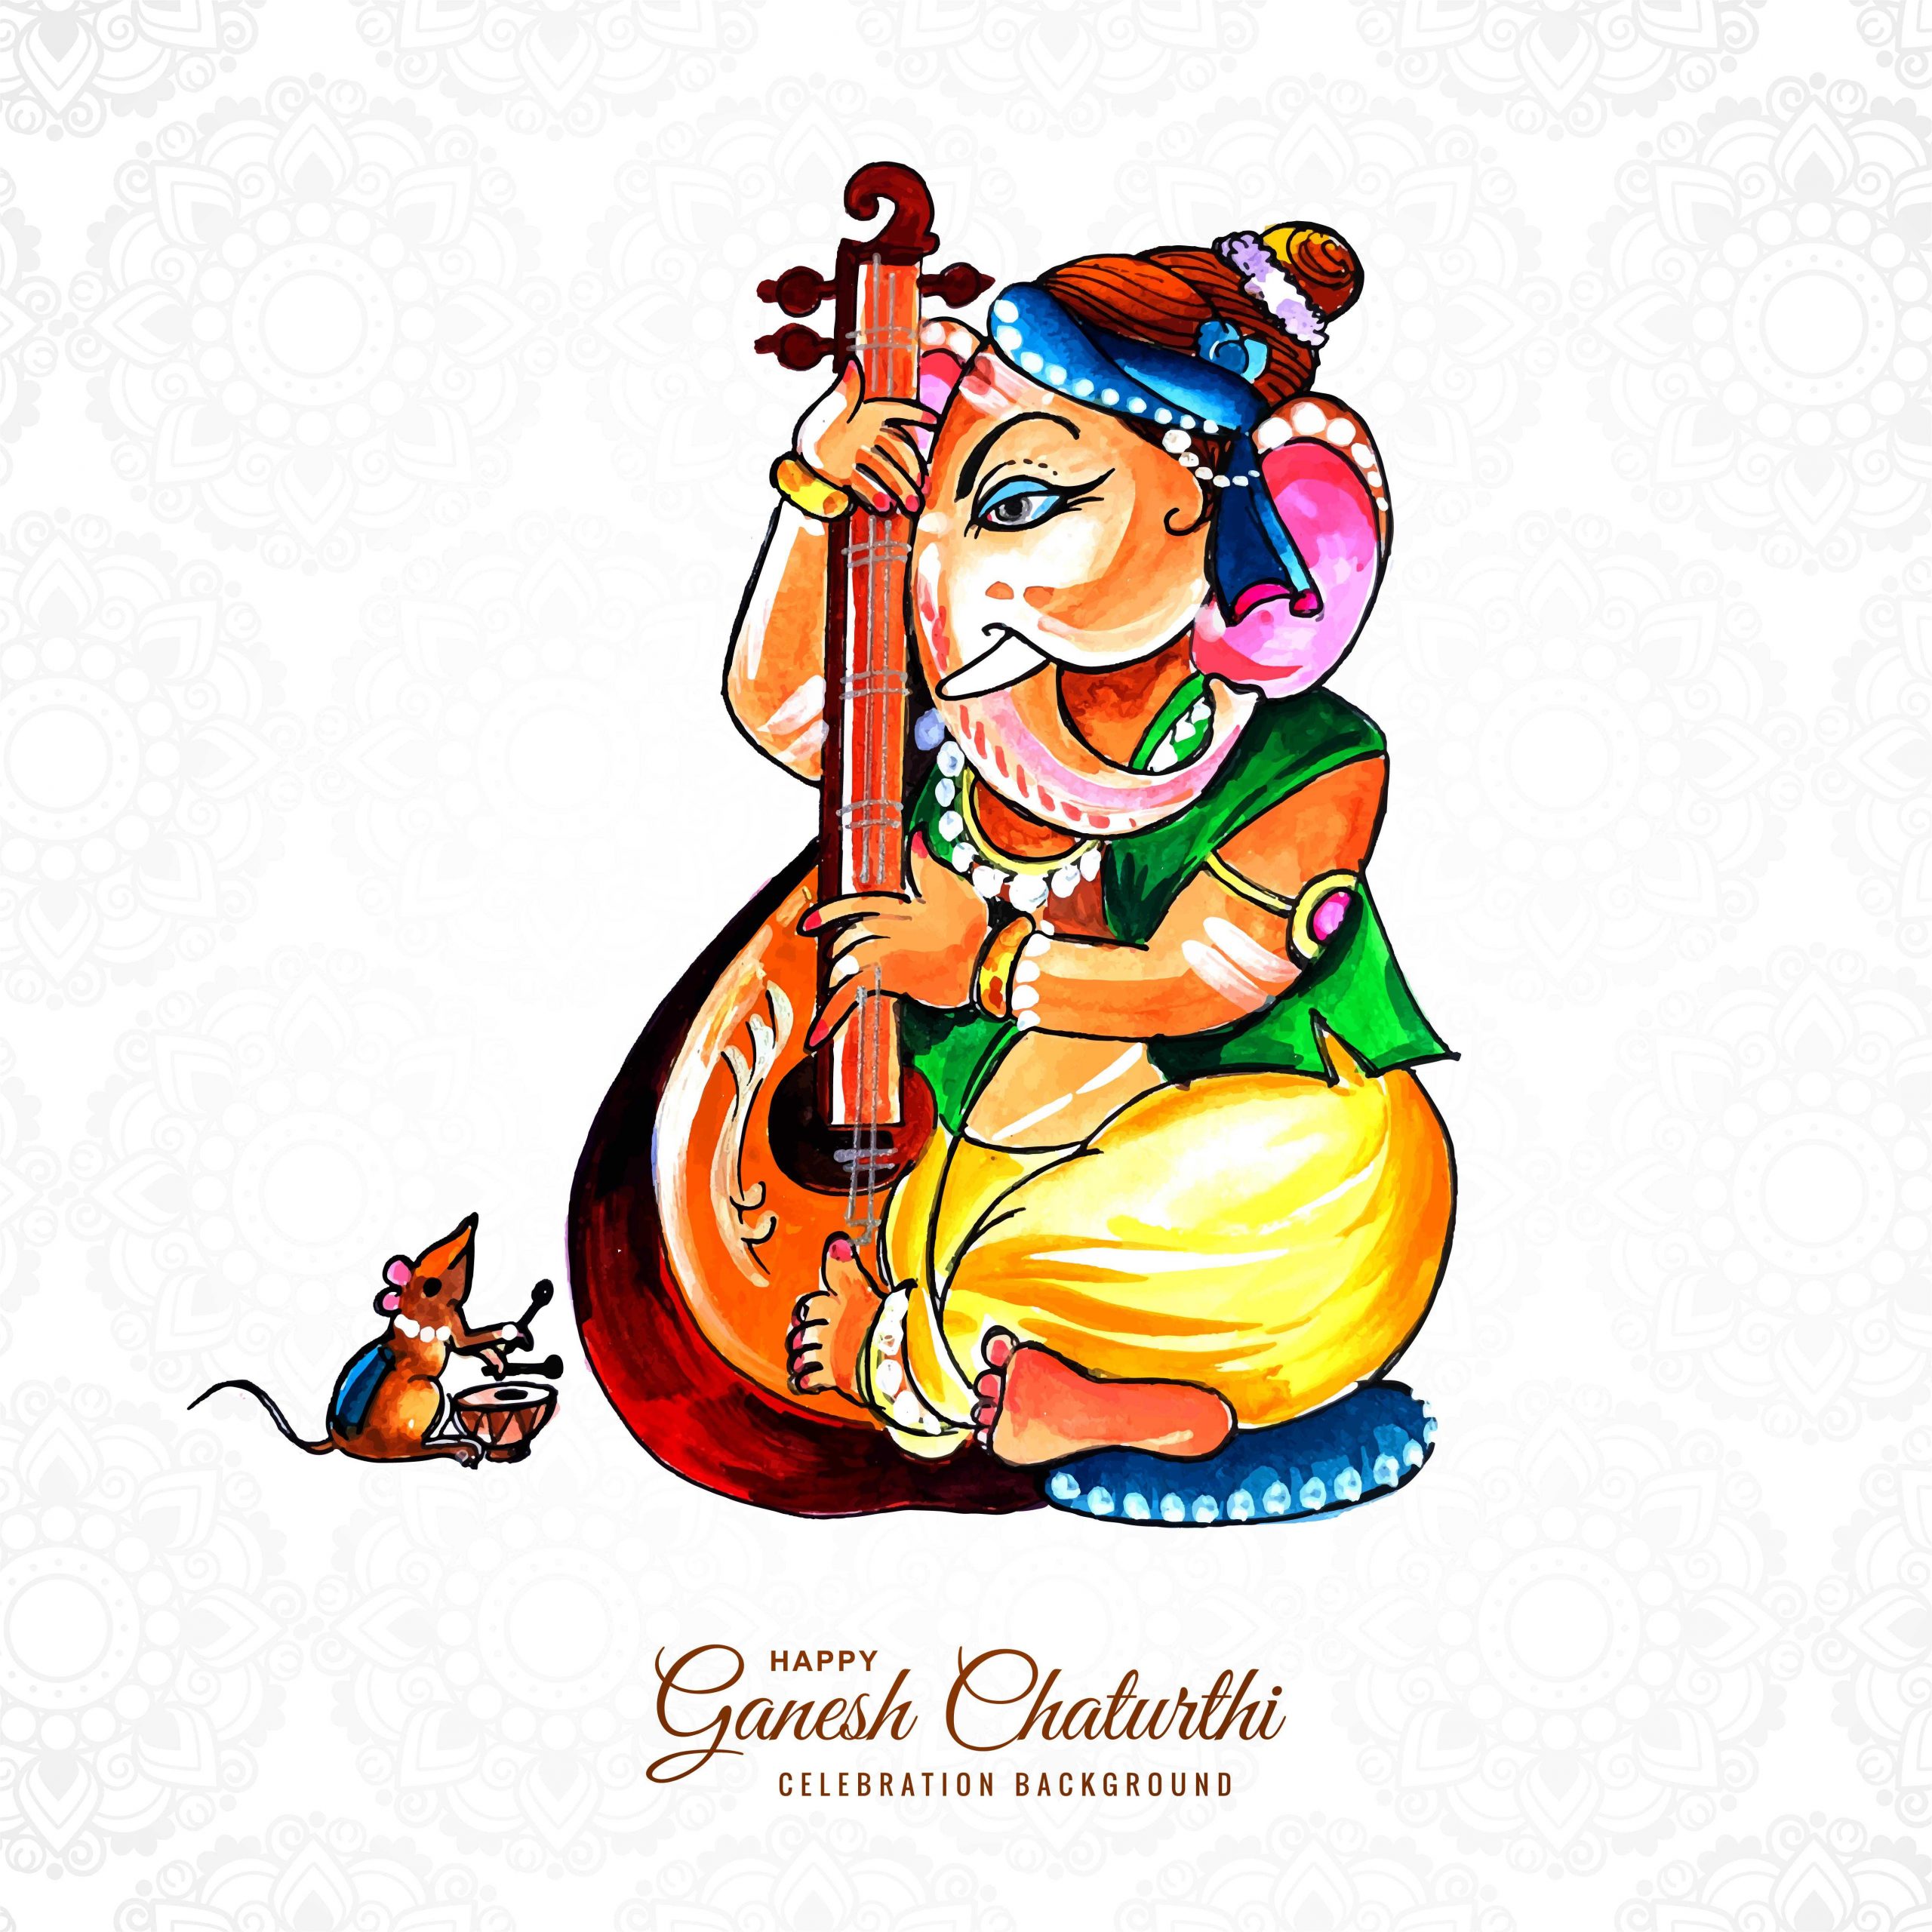 Ganesh Chaturthi wallpaper download 